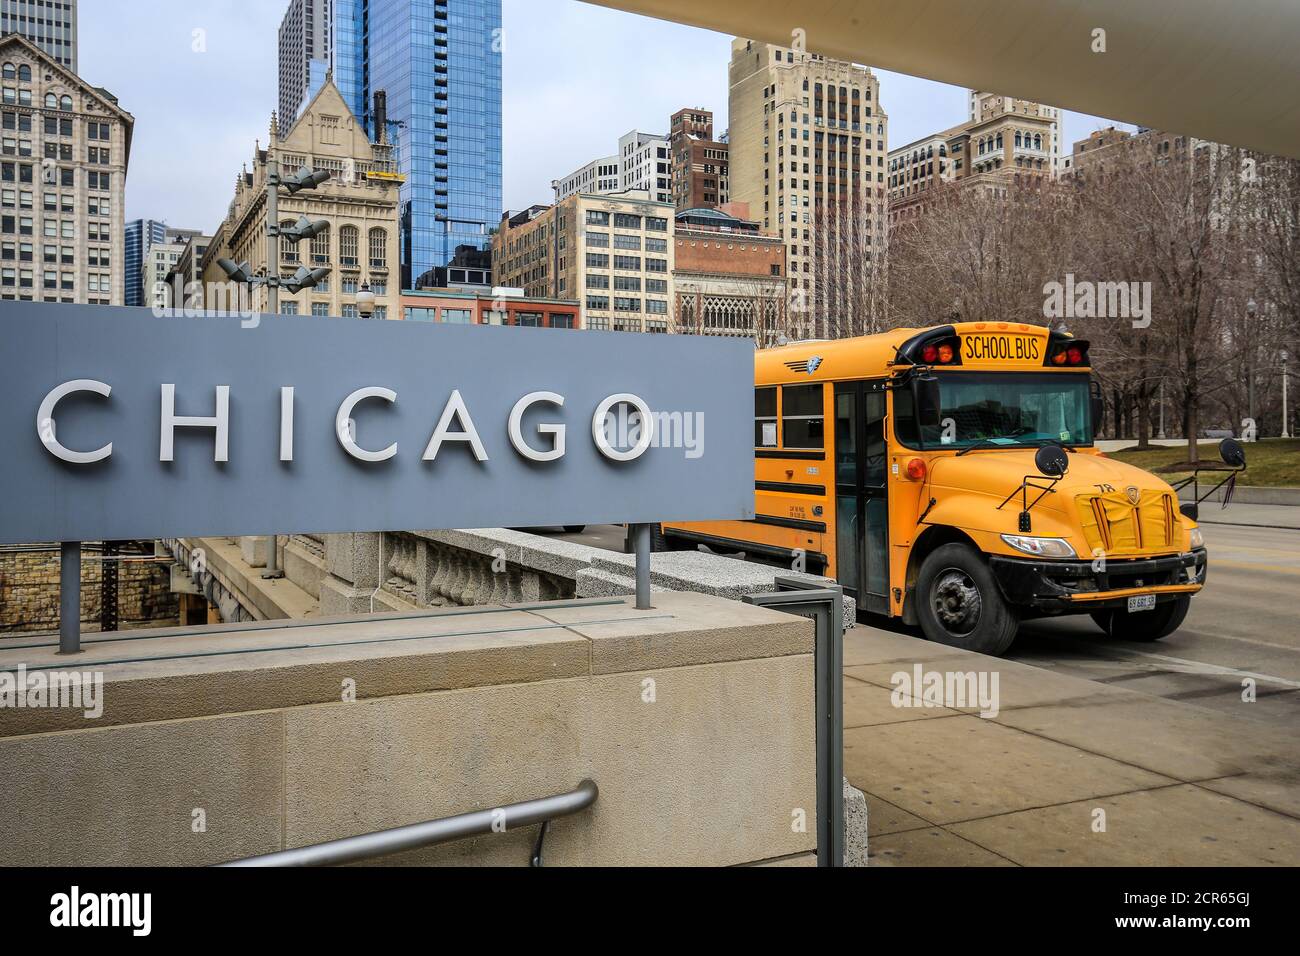 Scritta Chicago e bus scolastico, Chicago, Illinois, Stati Uniti, Nord America Foto Stock